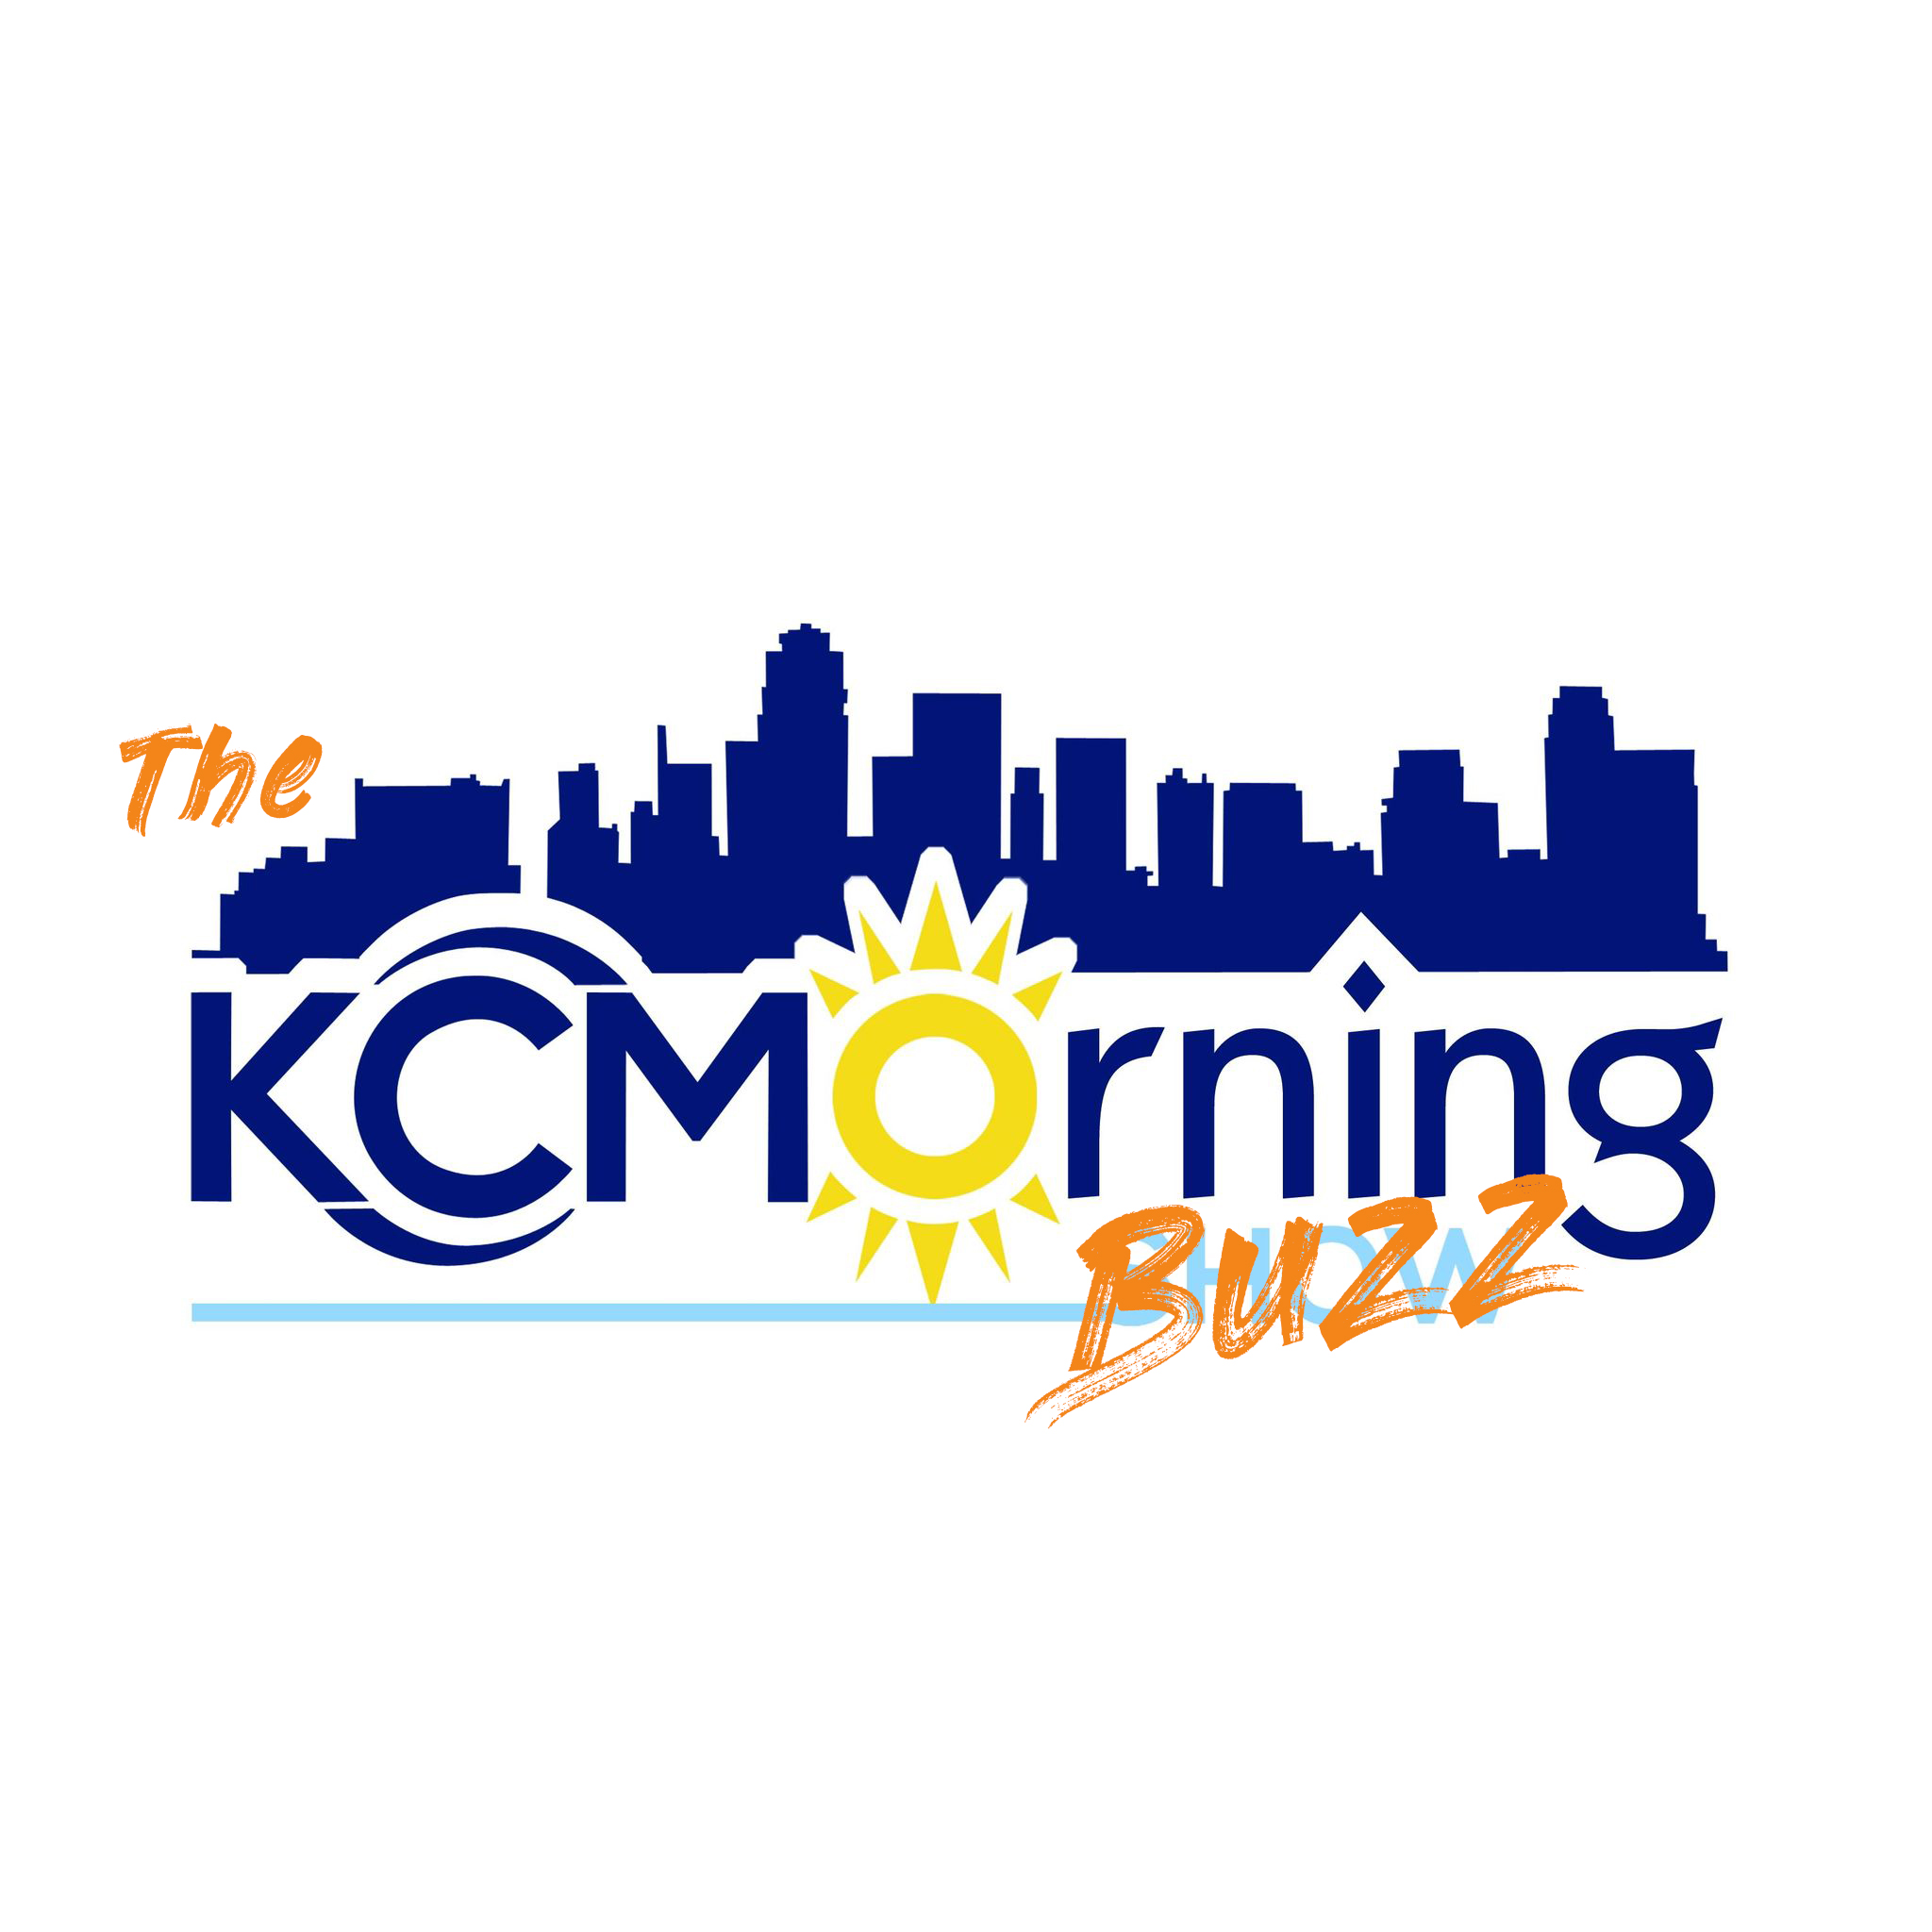 Tuesday, September 15 - &#34;The KC Morning Buzz&#34;